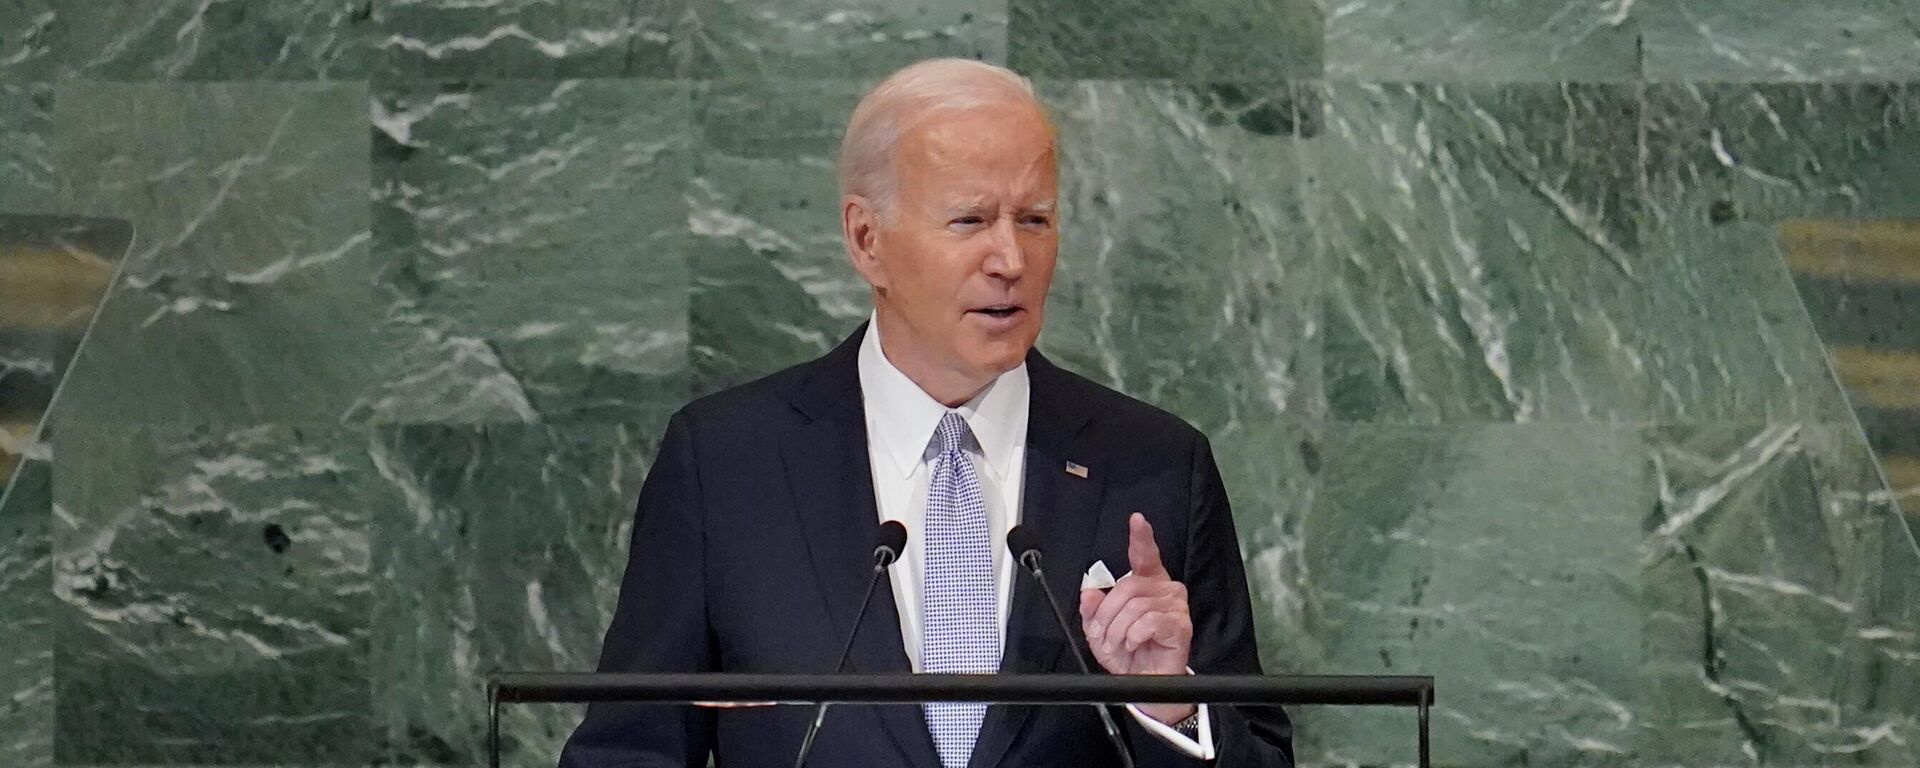 O presidente Joe Biden discursa na 77ª sessão da Assembleia Geral das Nações Unidas, em 21 de setembro de 2022 - Sputnik Brasil, 1920, 21.09.2022